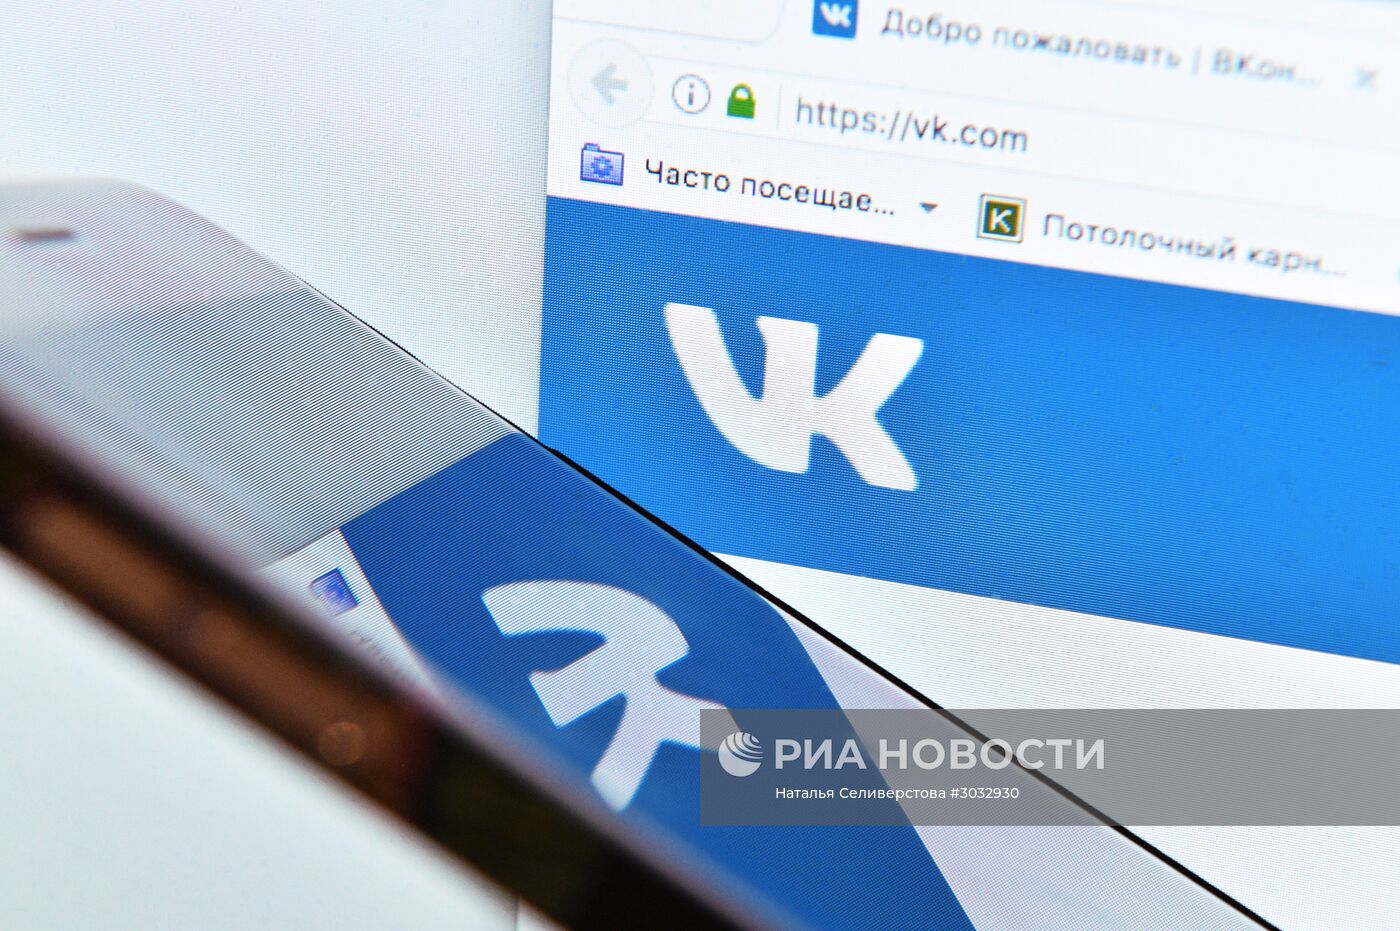 Социальная сеть "Вконтакте"